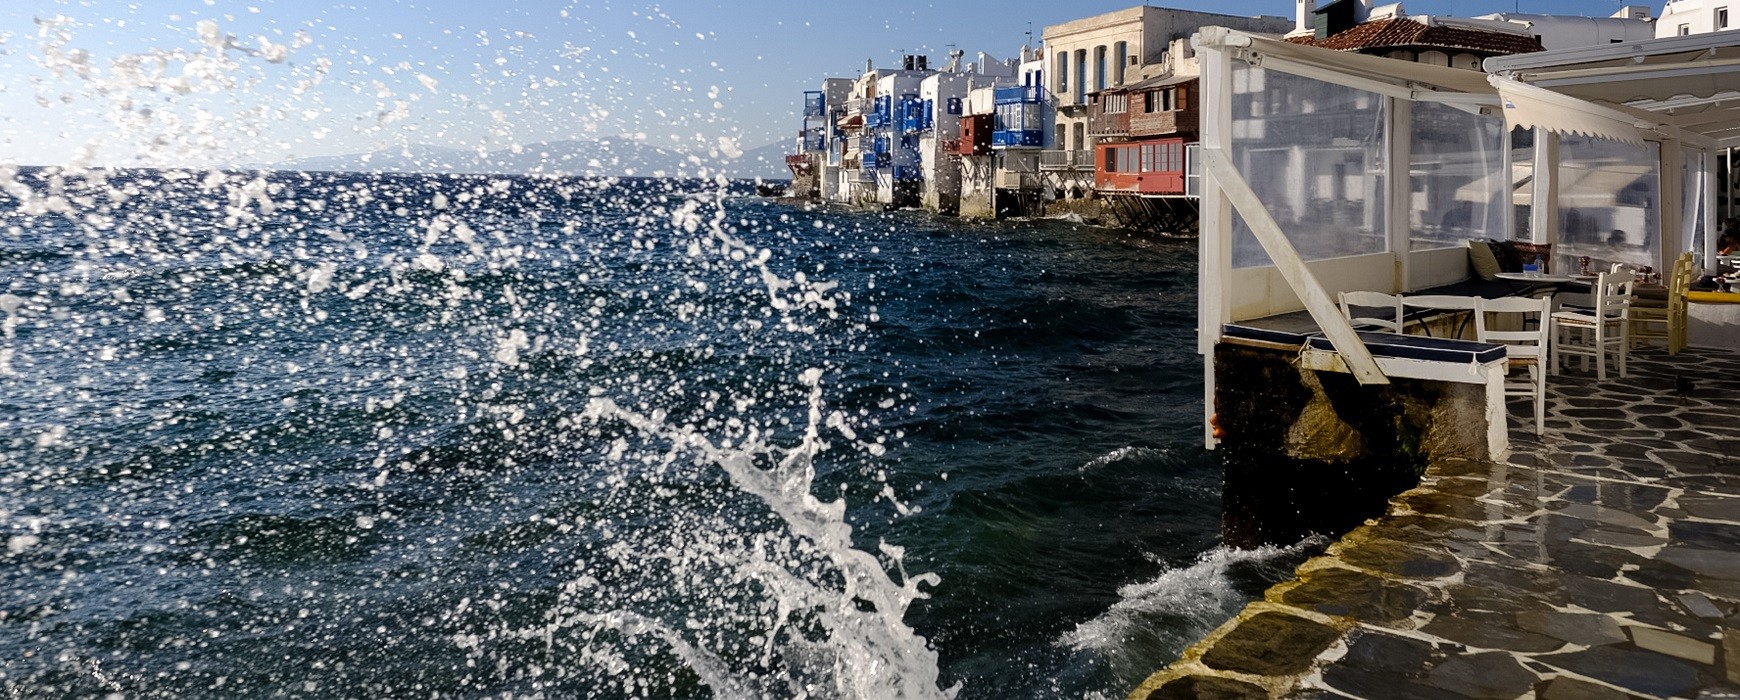 Μύκονος: Εντοπίστηκε νεκρός 37χρονος Έλληνας στο λιμάνι